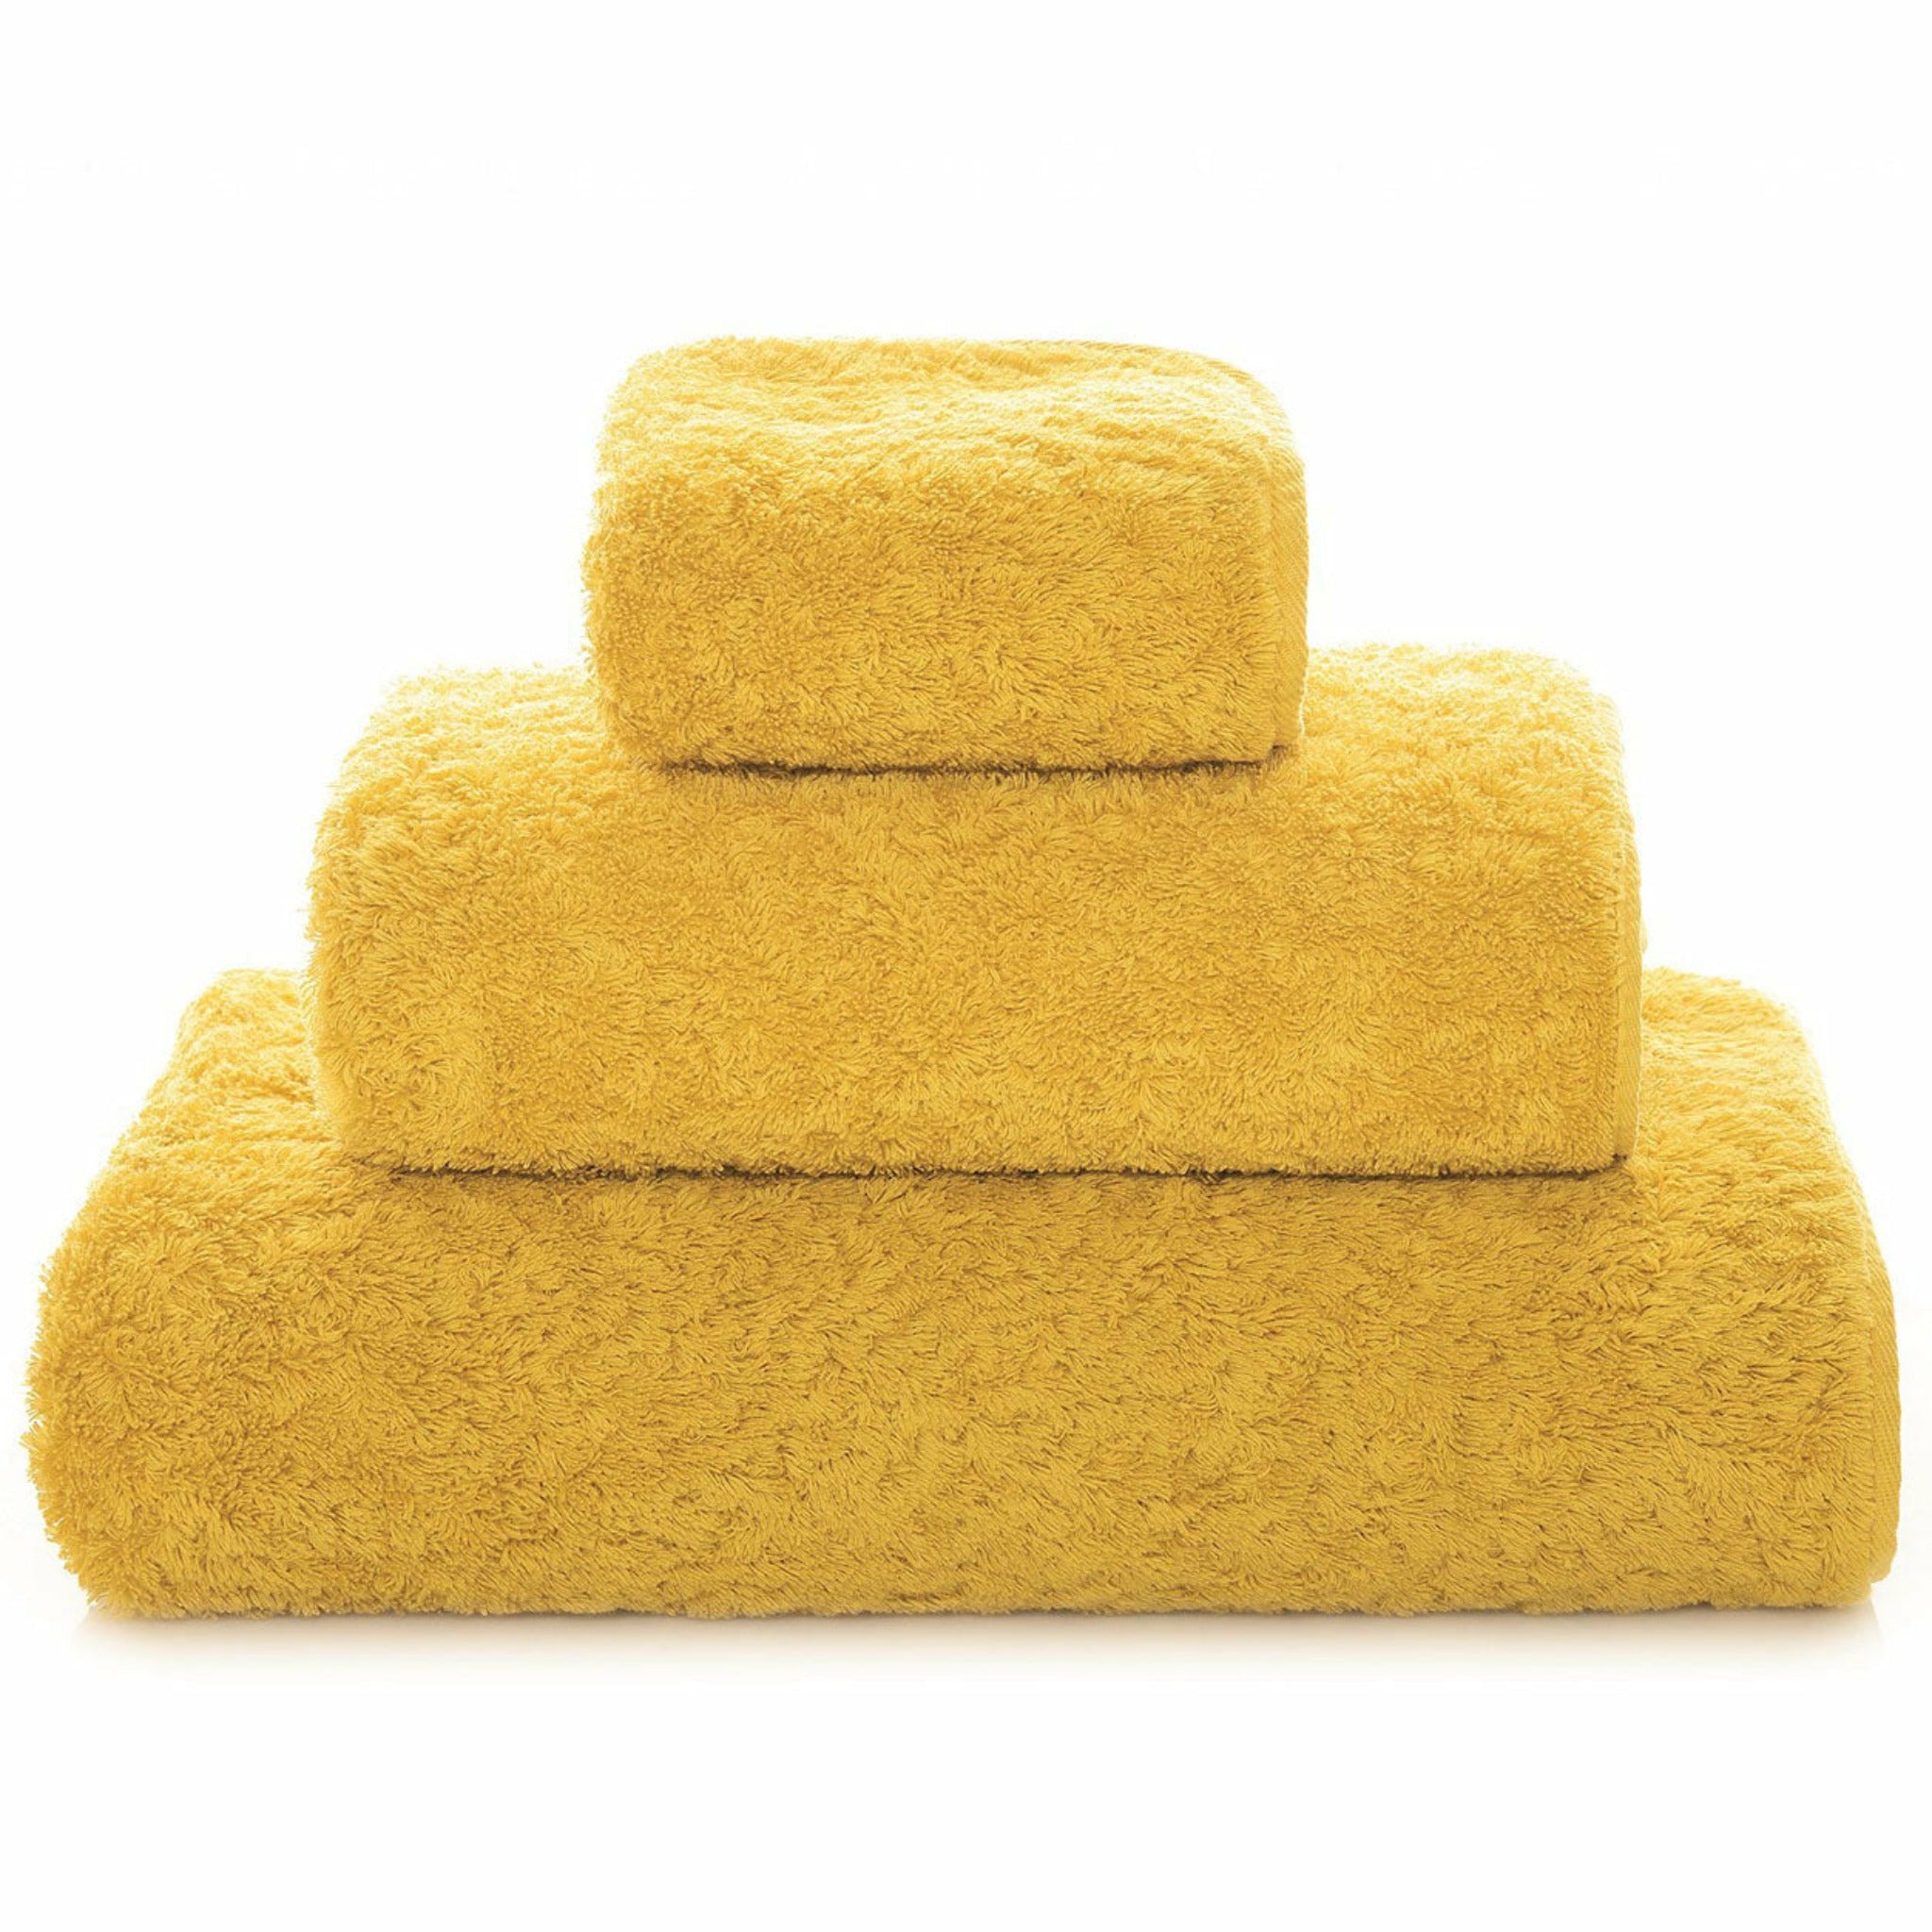 Graccioza Egoist Bath Towels (Mustard)